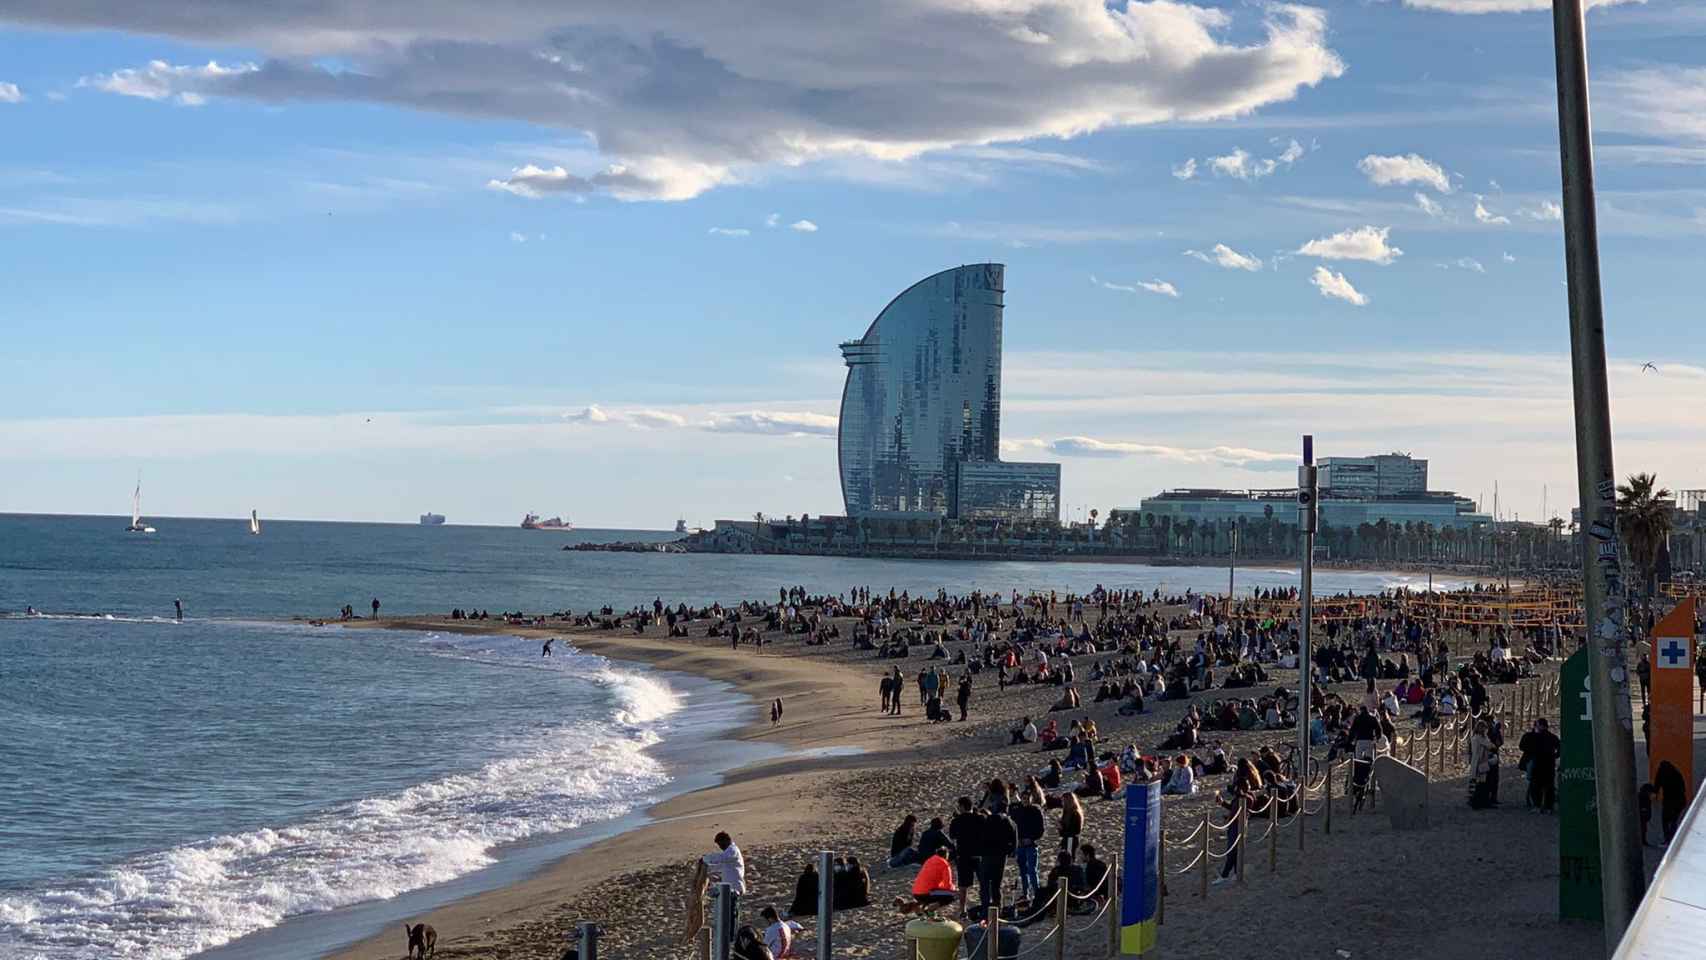 La playa de la Barceloneta durante el mes de enero, llena de gente a reventar / VERÓNICA MUR